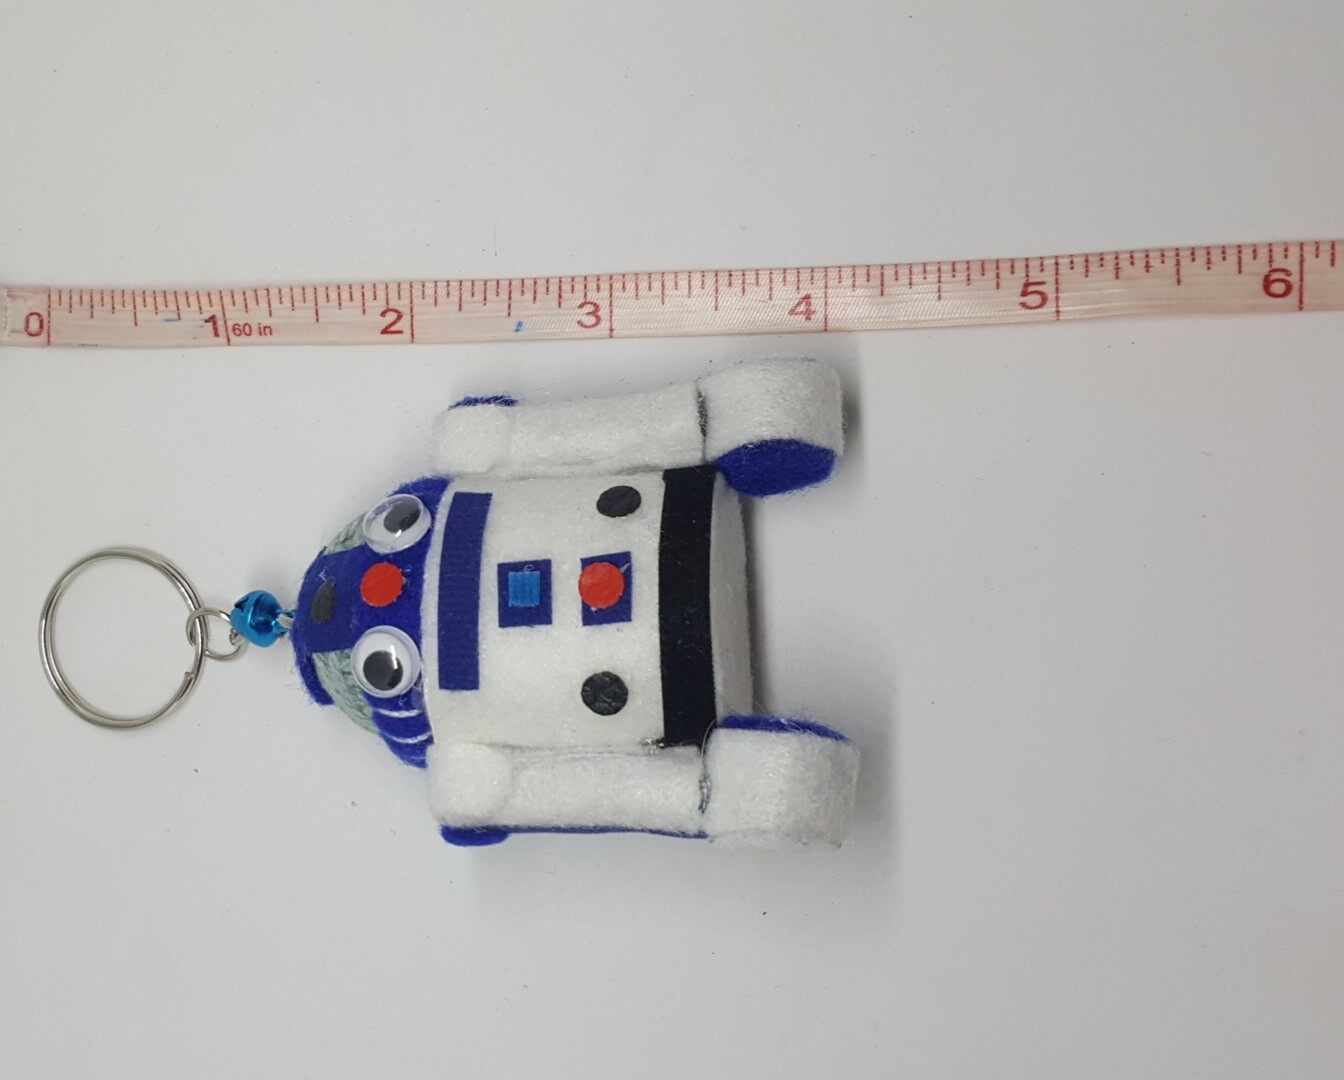 ตุ๊กตา พวงกุญแจ หุ่นยนต์ อาร์ทู ดีทู สตาร์ วอร์ส Star Wars - R2 D2